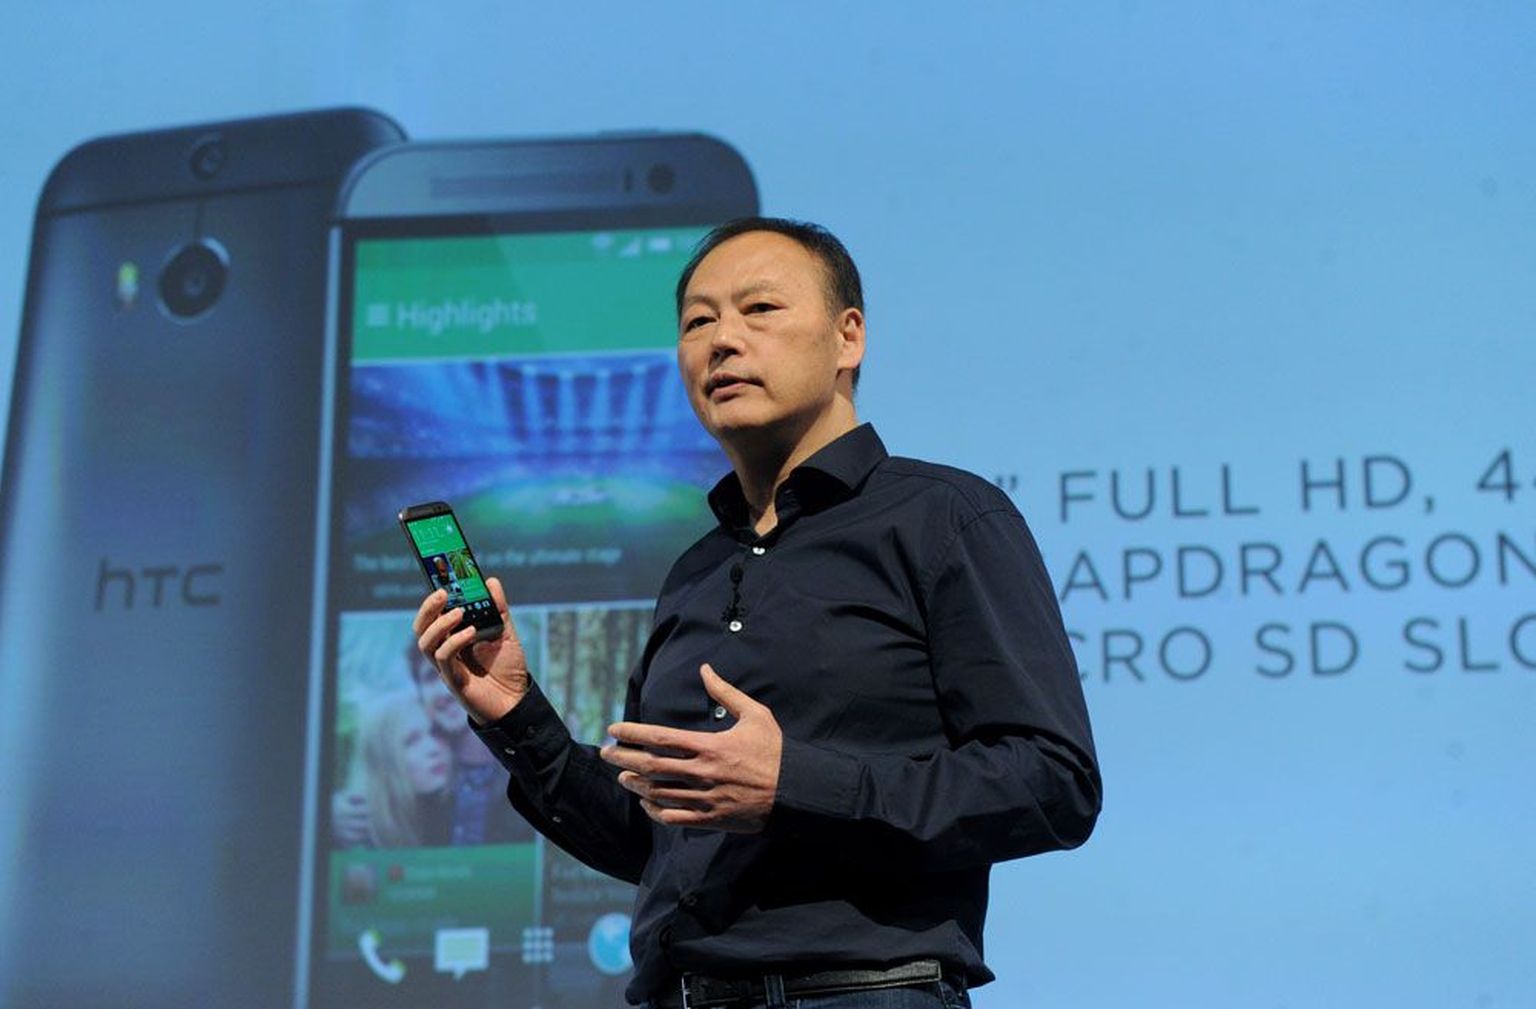 HTC tegevjuht Peter Chou esitles märtsi lõpul HTC uut tipptelefoni koodnimega M8. Kas see viib HTC kauaoodatud tõusule?